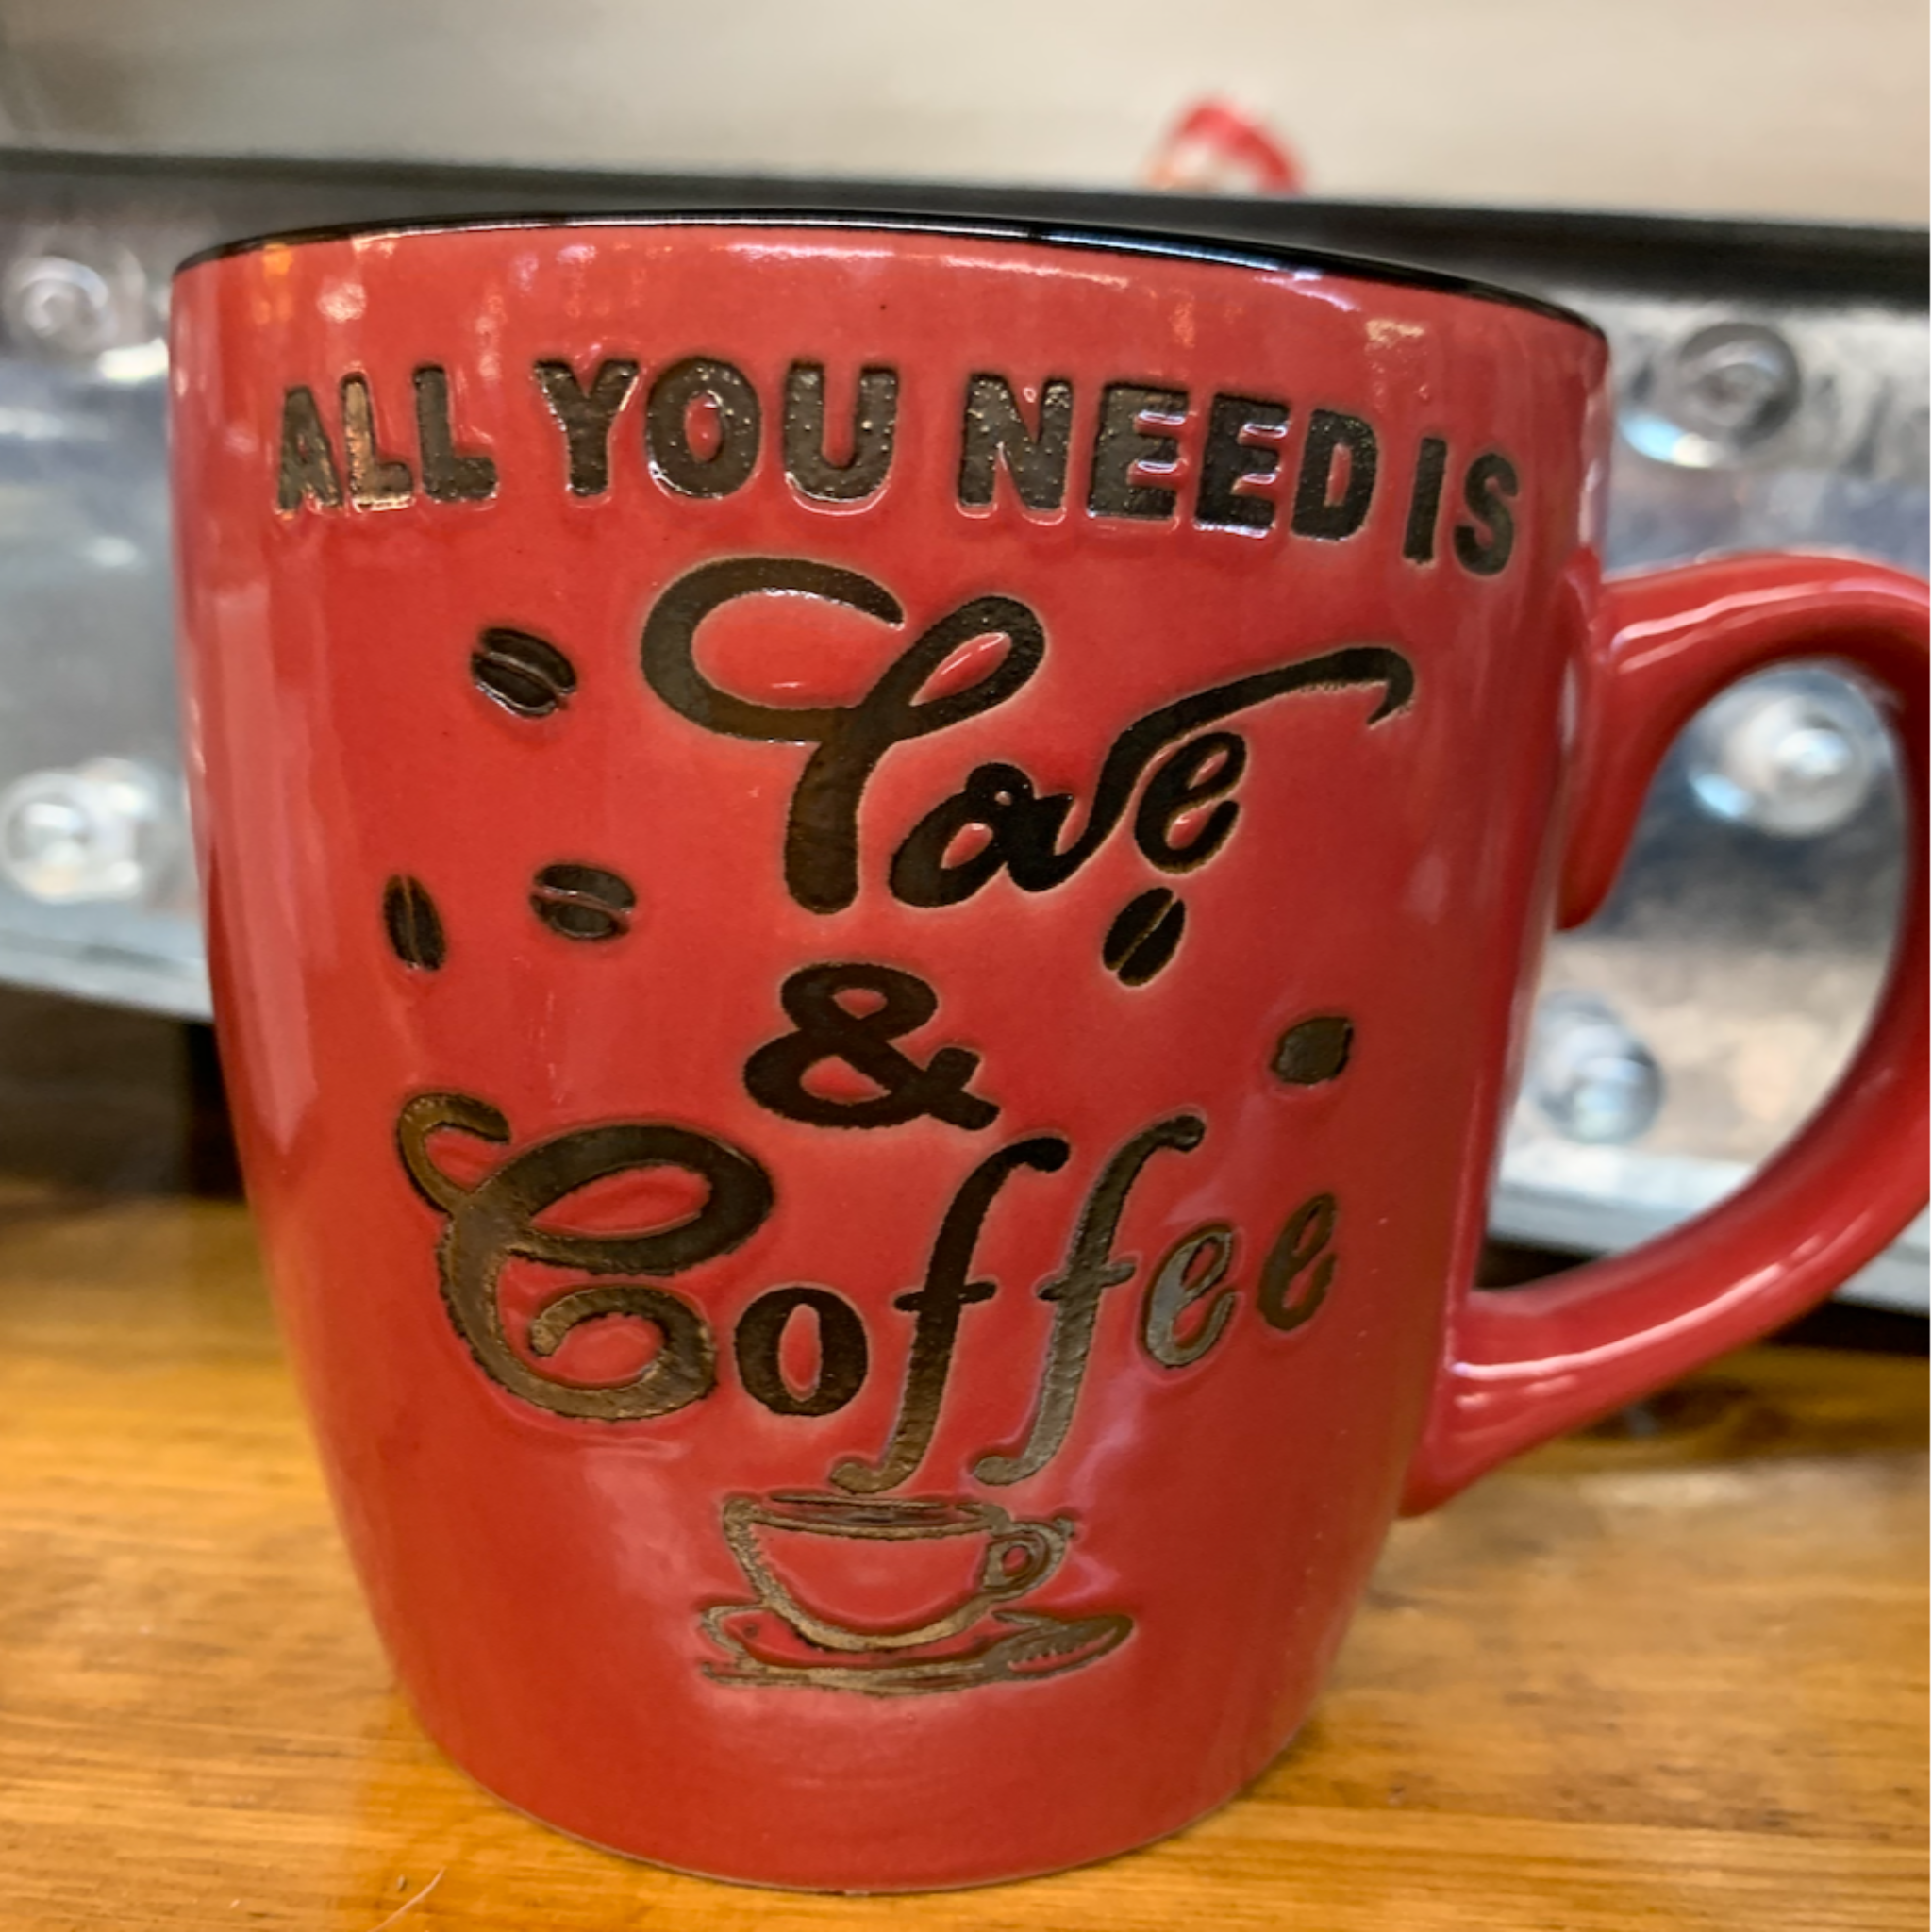 All You Need Mug